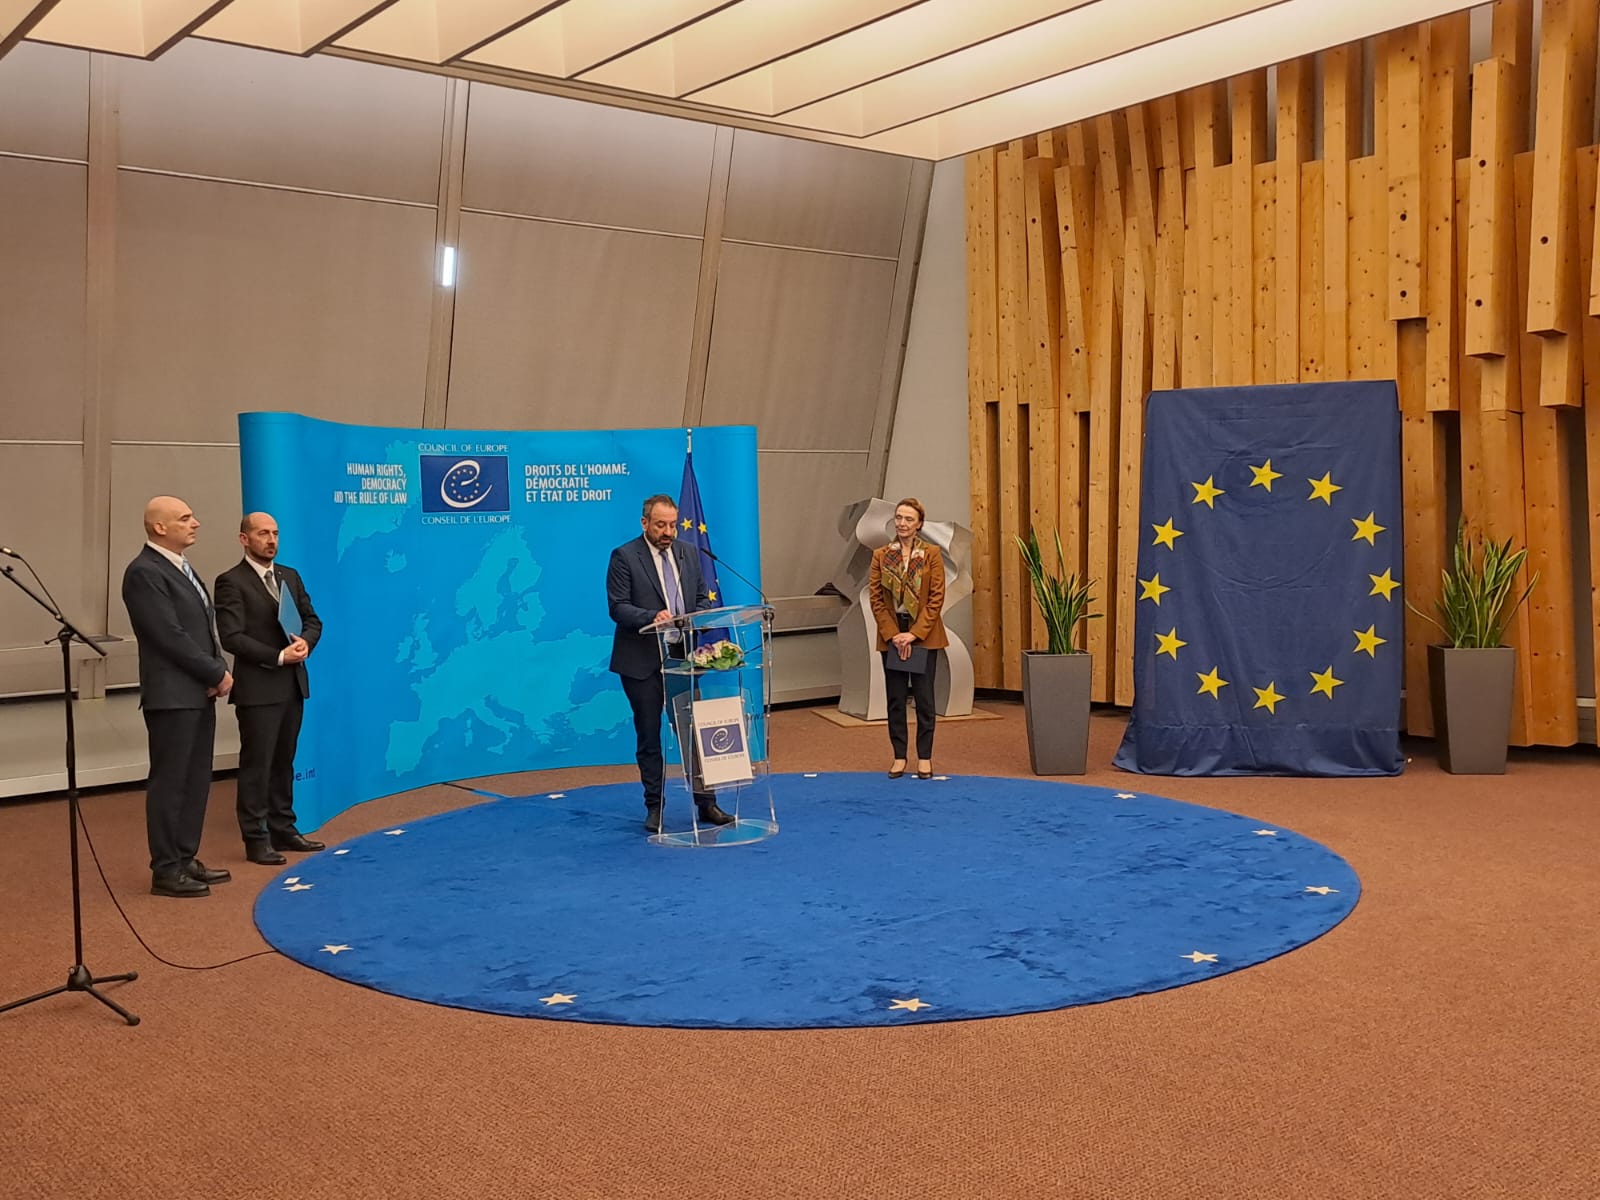 Ricorre il 35esimo anniversario dell’adesione di San Marino al Consiglio d’Europa